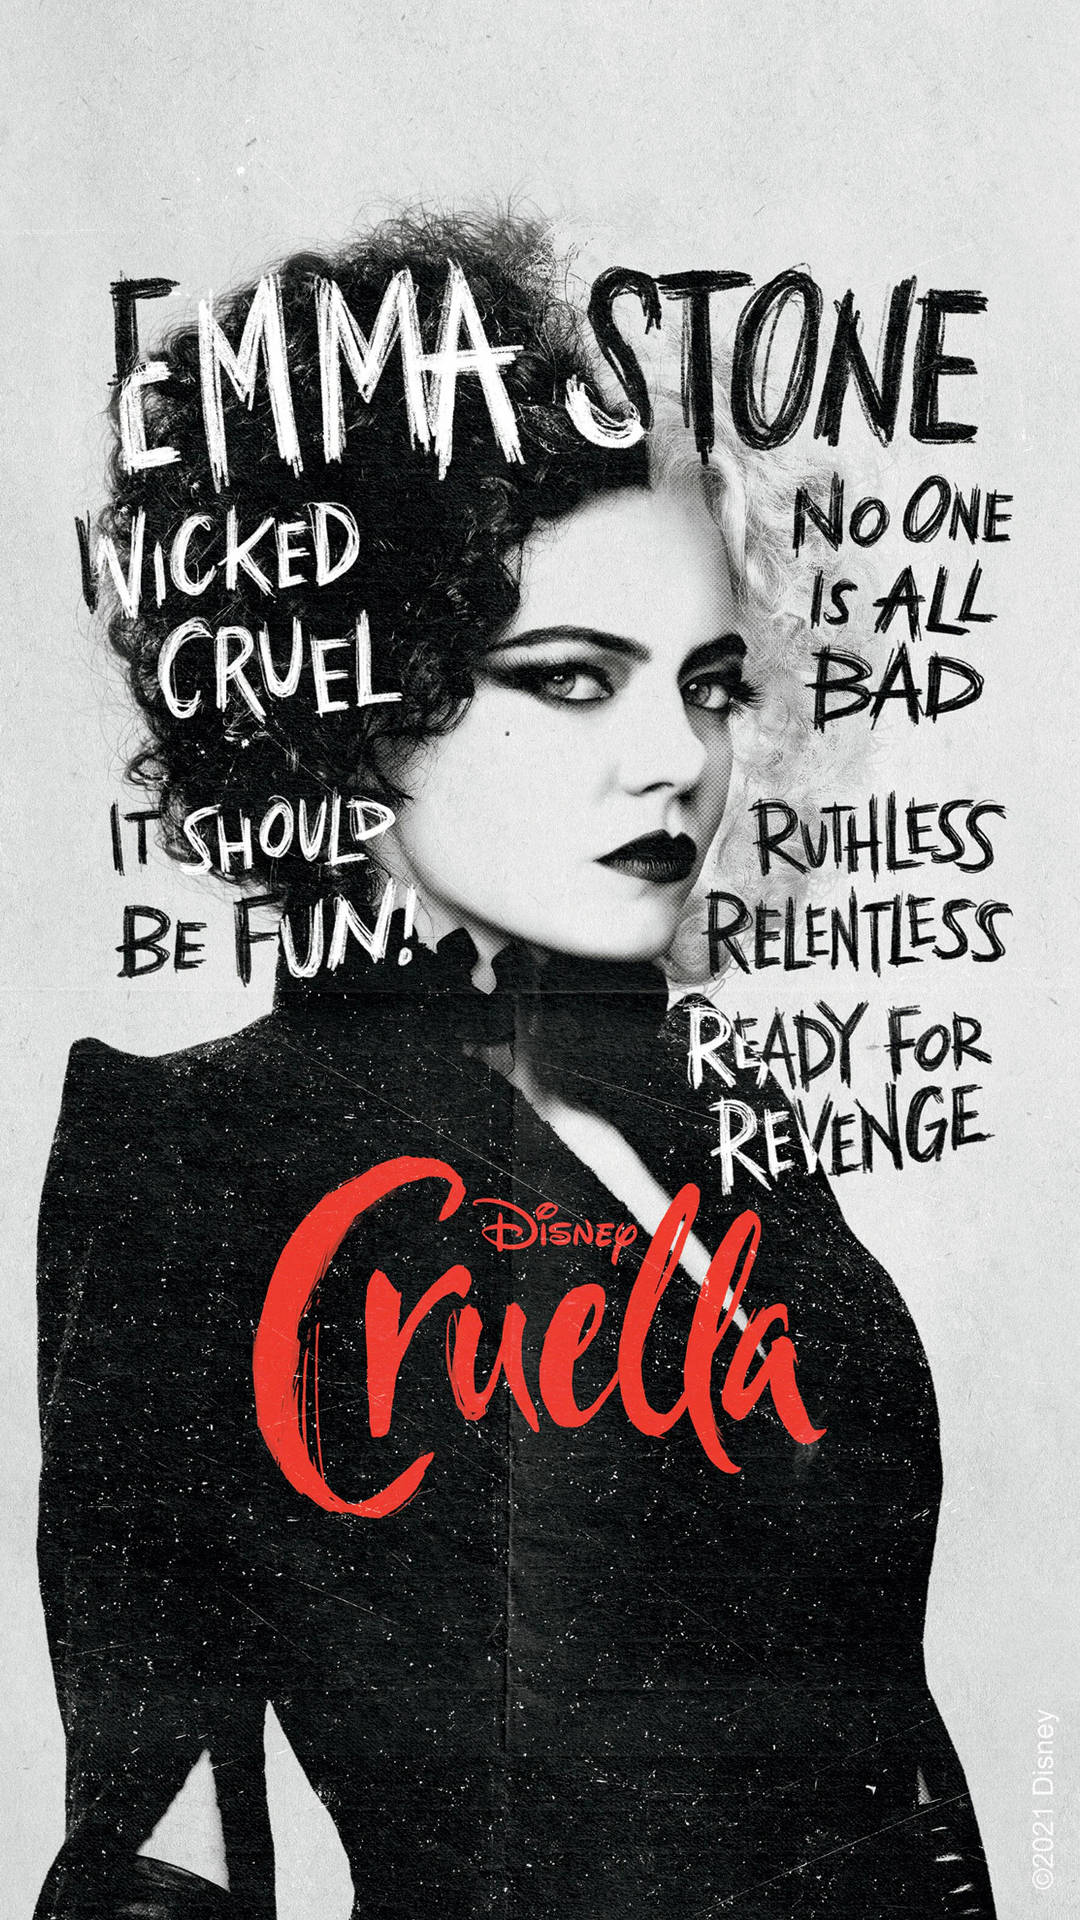 Cruella 2021 Wicked Cruel Poster Background